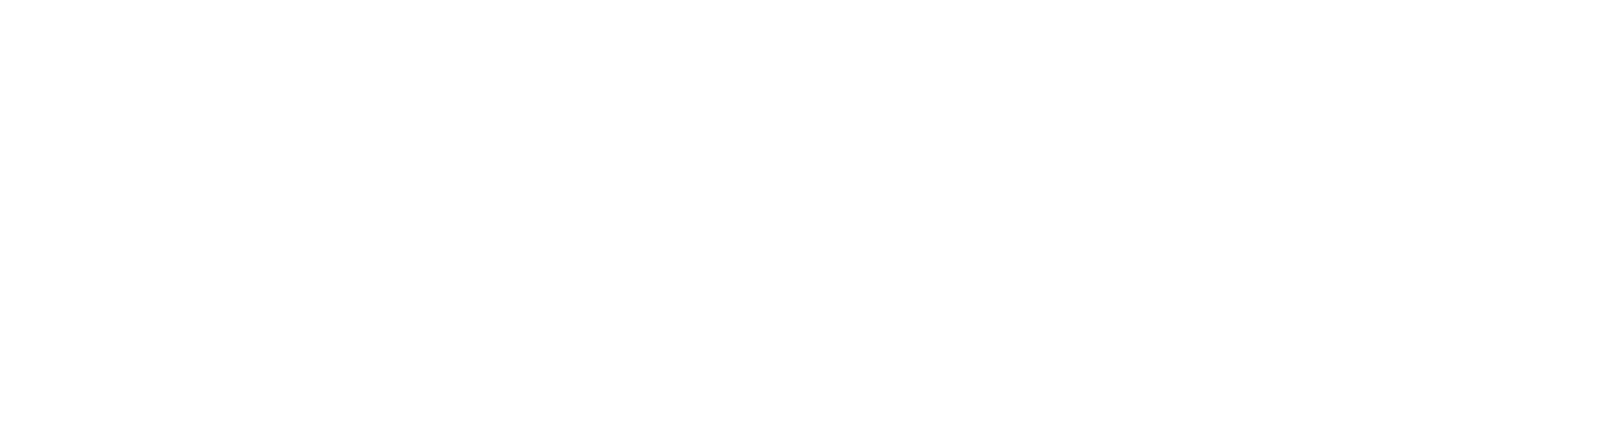 Dexus logo large for dark backgrounds (transparent PNG)